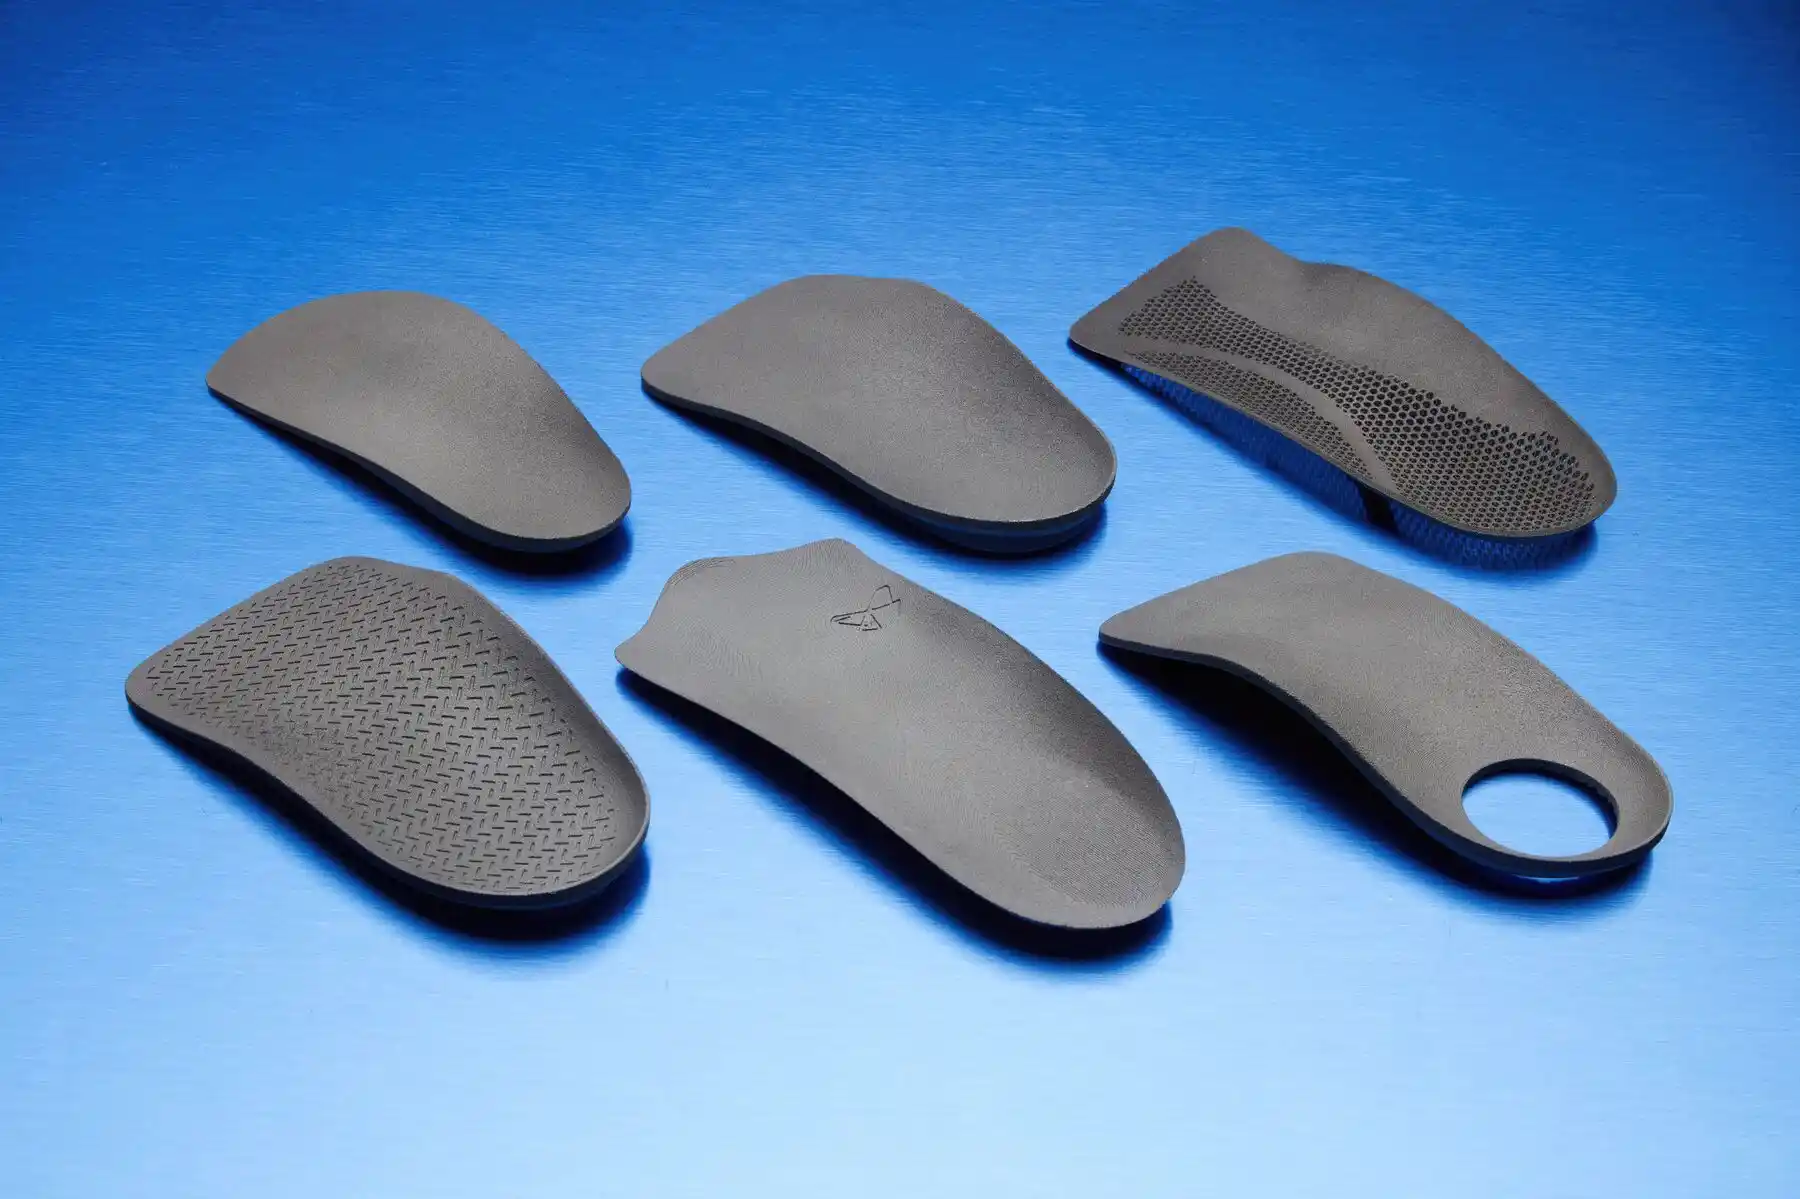 Anwendungsleitfaden - Formlabs SLS 3D-Druck: Herstellung von Einlagenrohlingen